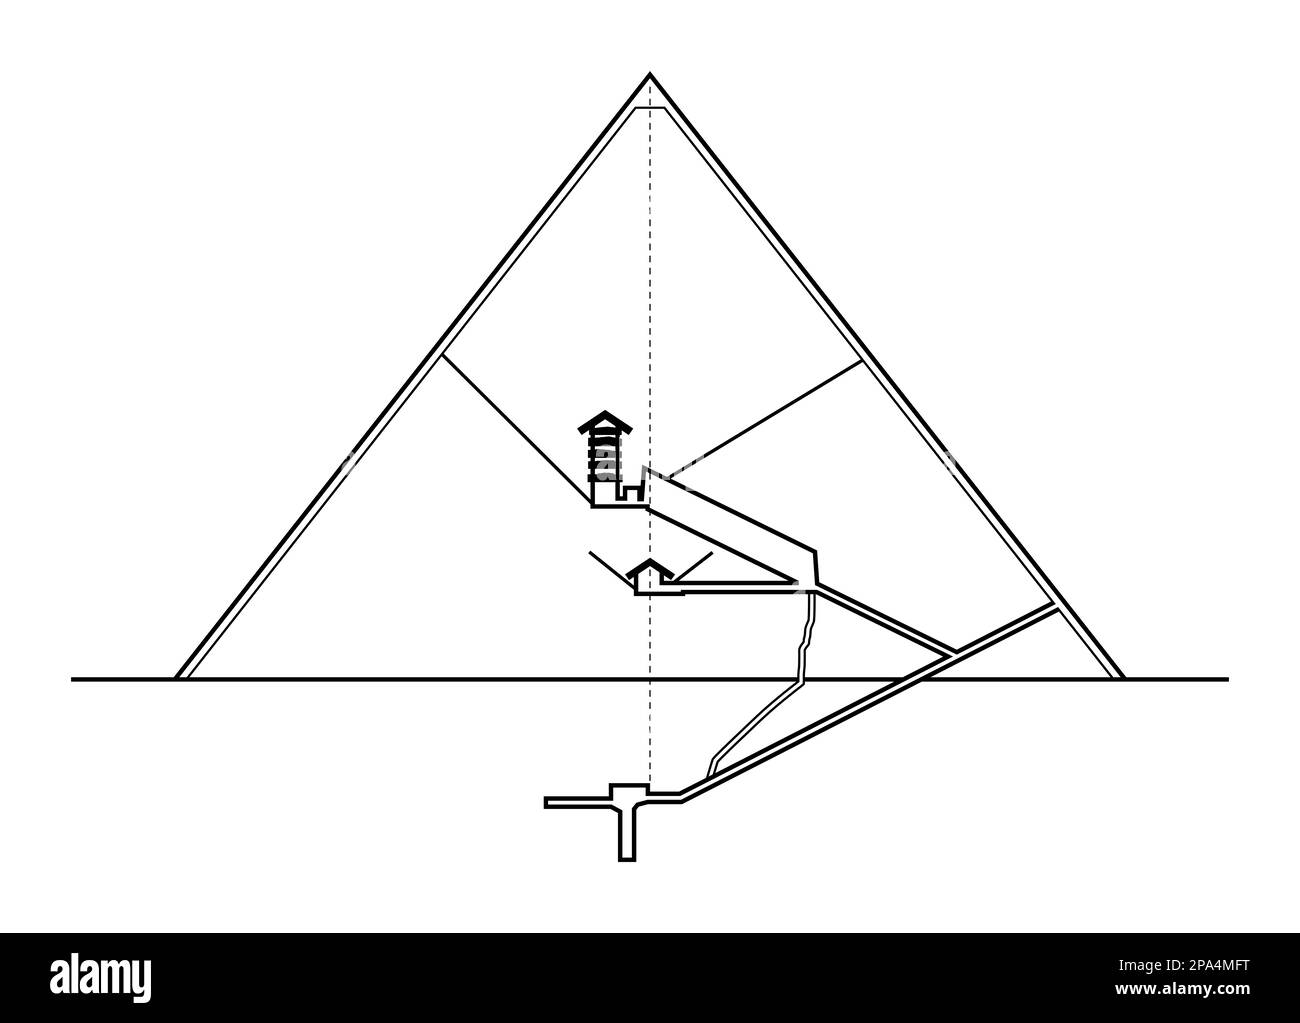 Große Pyramide von Gizeh, vertikaler Abschnitt, von Osten aus gesehen. Höhendiagramm der Innenstrukturen der grössten Pyramide Agyptens. Stockfoto